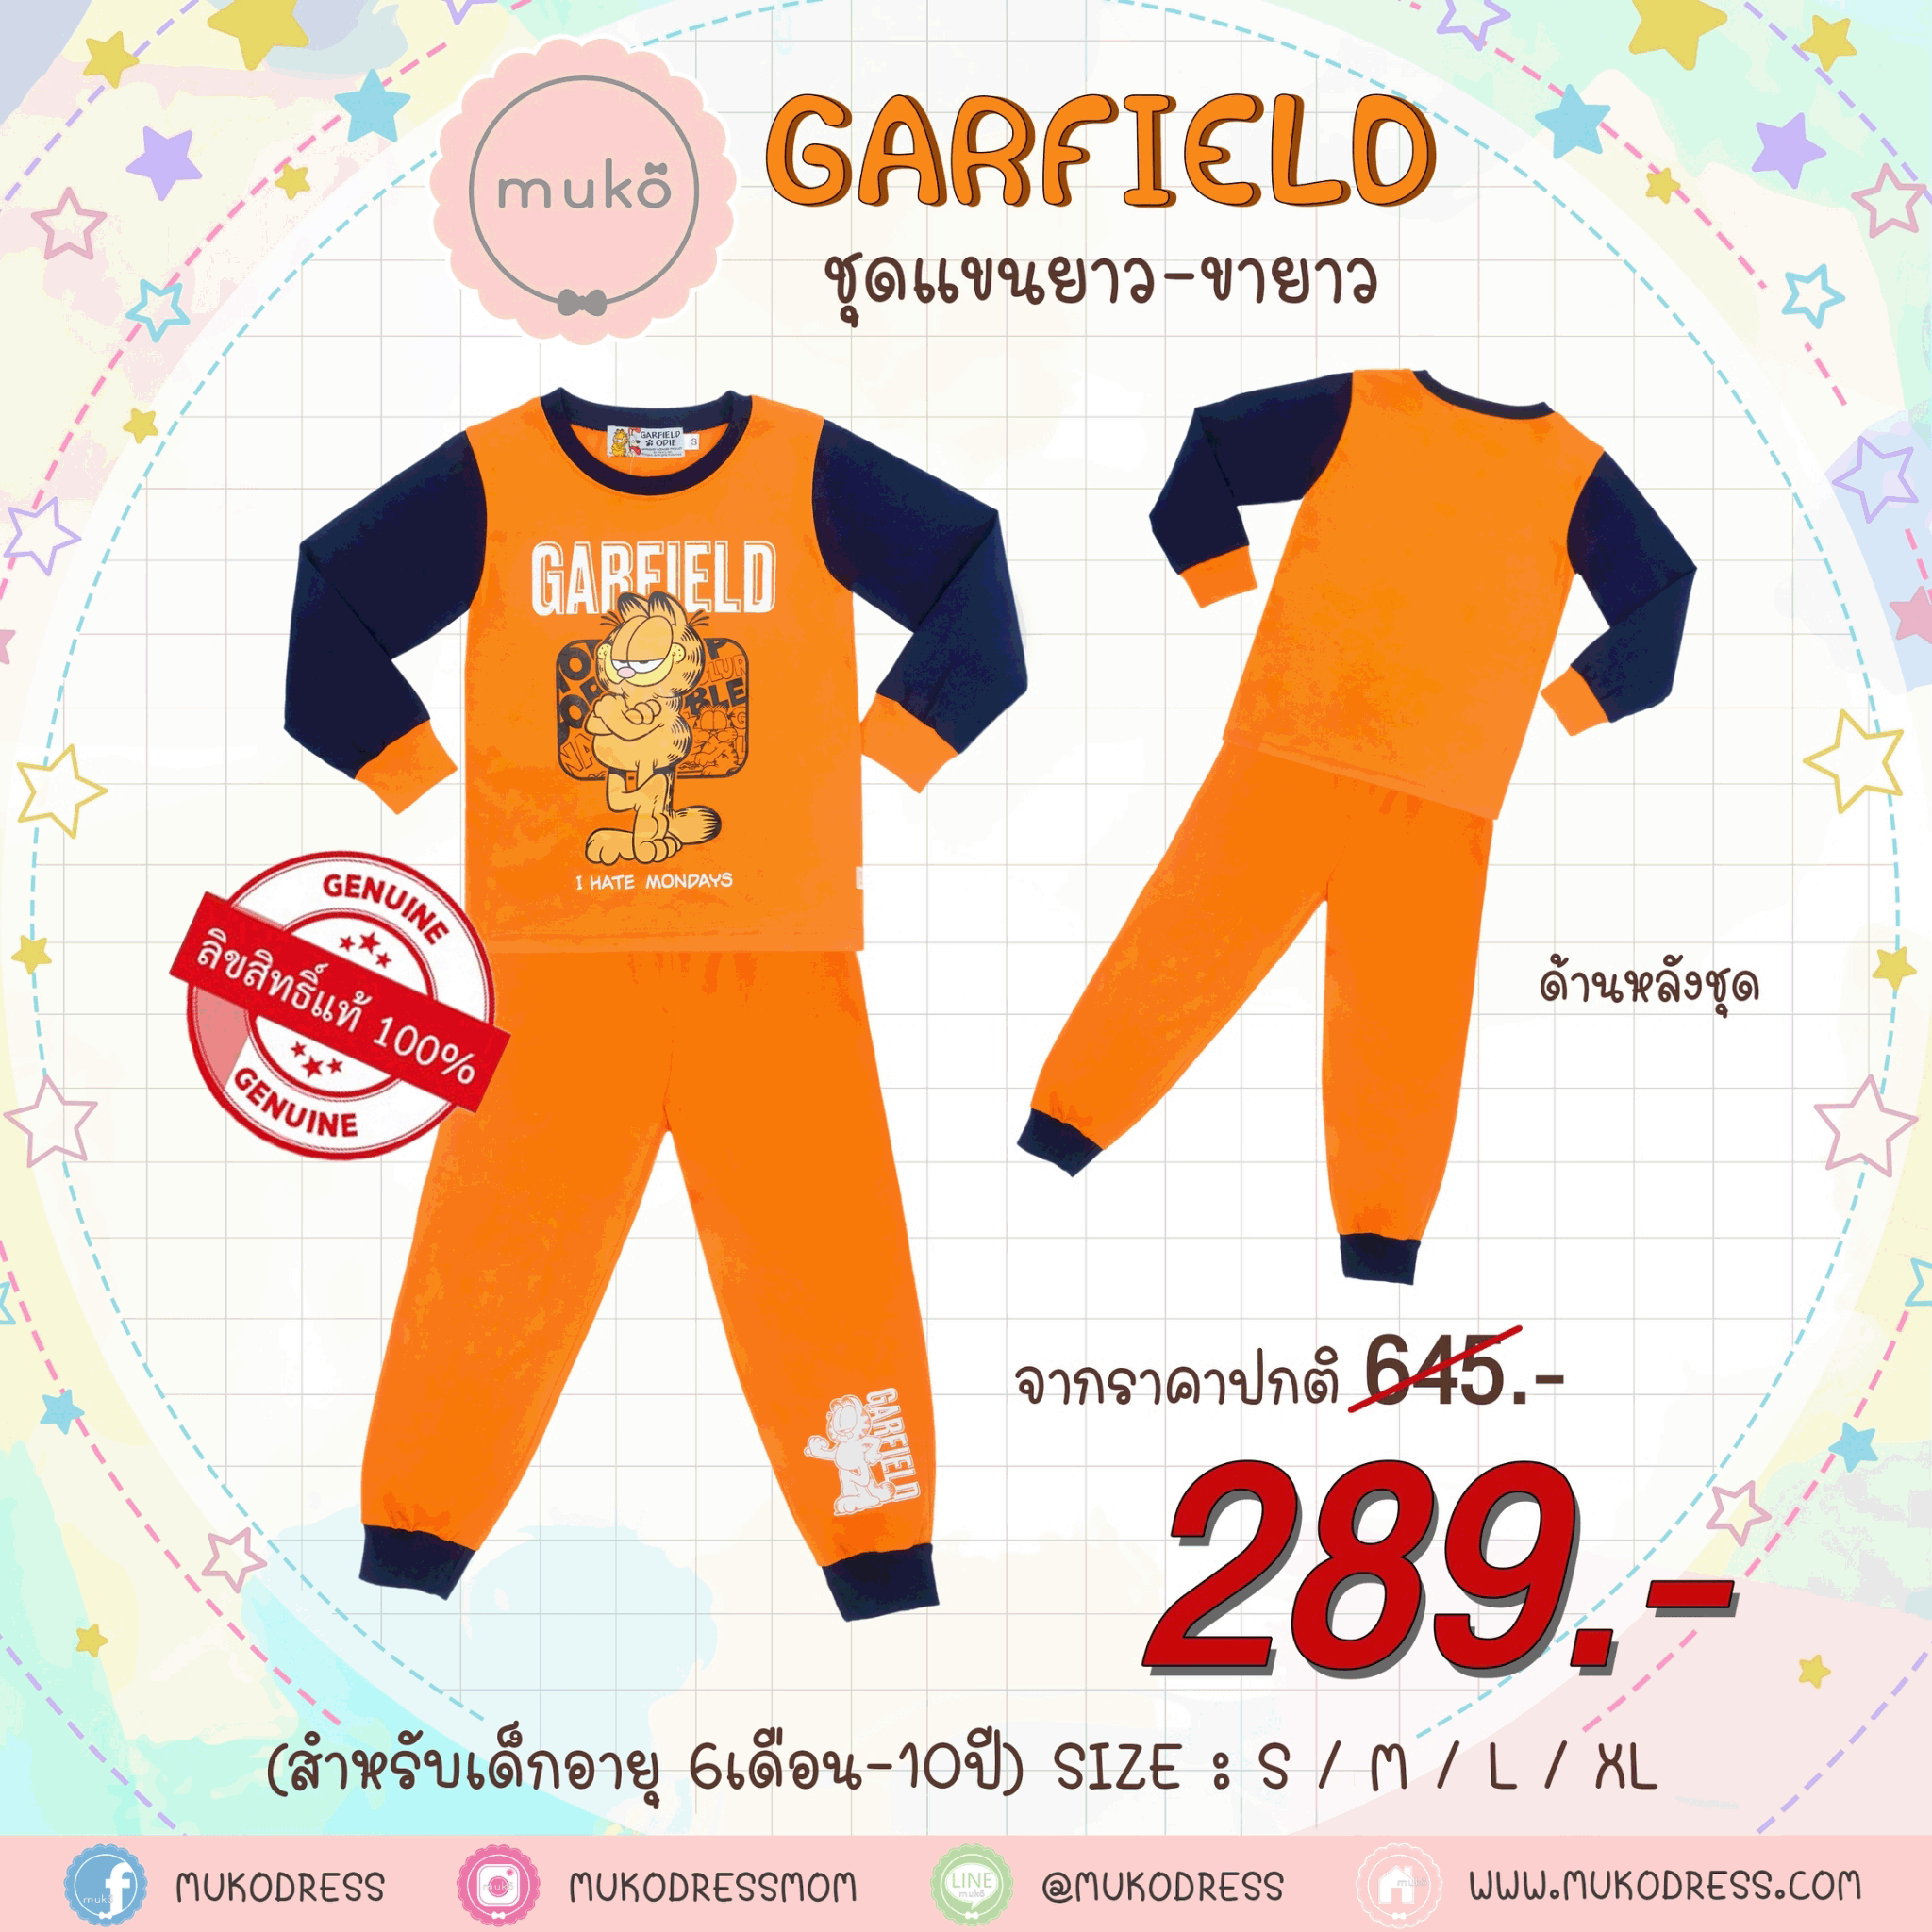 ชุดเด็ก 6-7 ขวบ แขนยาว-ขายาว (Size L) MGF127-103-XL-Orange L ลาย กาฟิวส์ Garfield สีส้ม